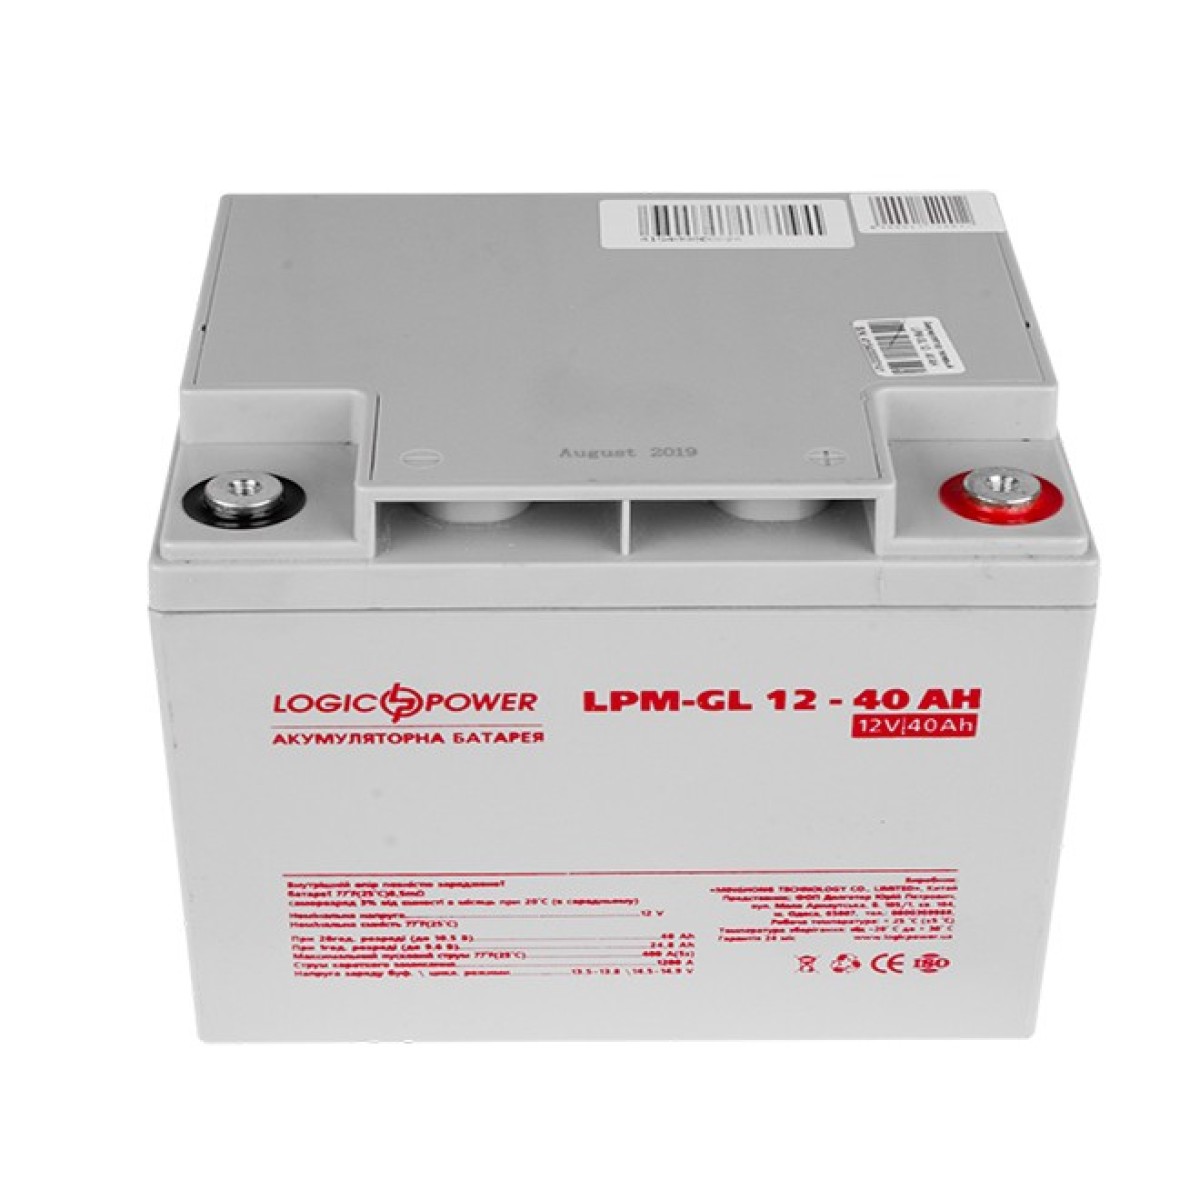 Аккумулятор гелевый LPM-GL 12 - 40 AH 256_256.jpg